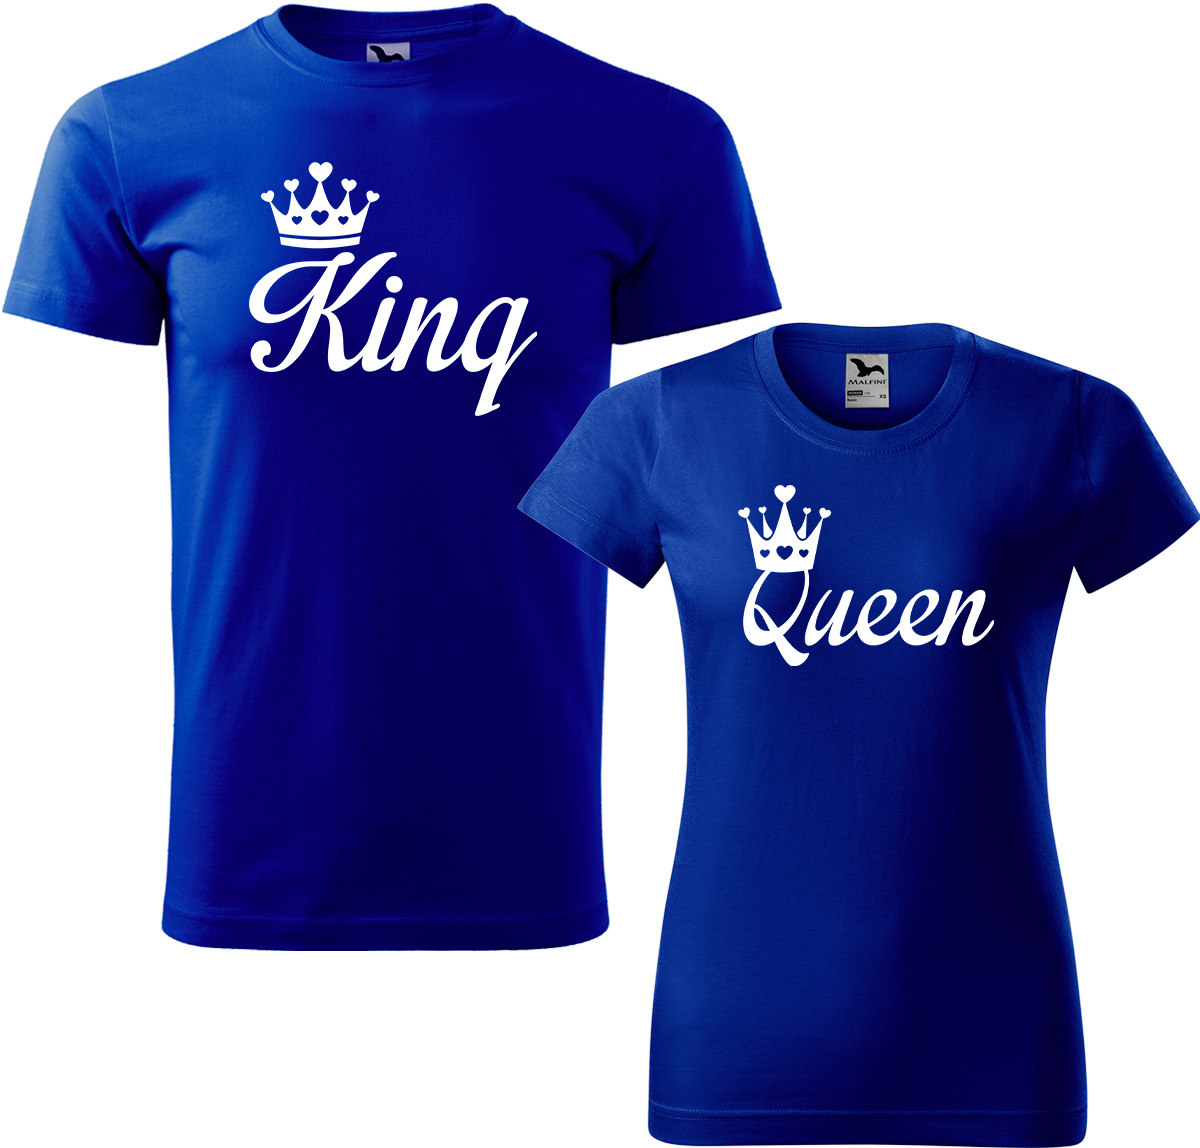 Trička pro páry - King a queen Barva: Královská modrá (05), Velikost dámské tričko: 3XL, Velikost pánské tričko: 3XL